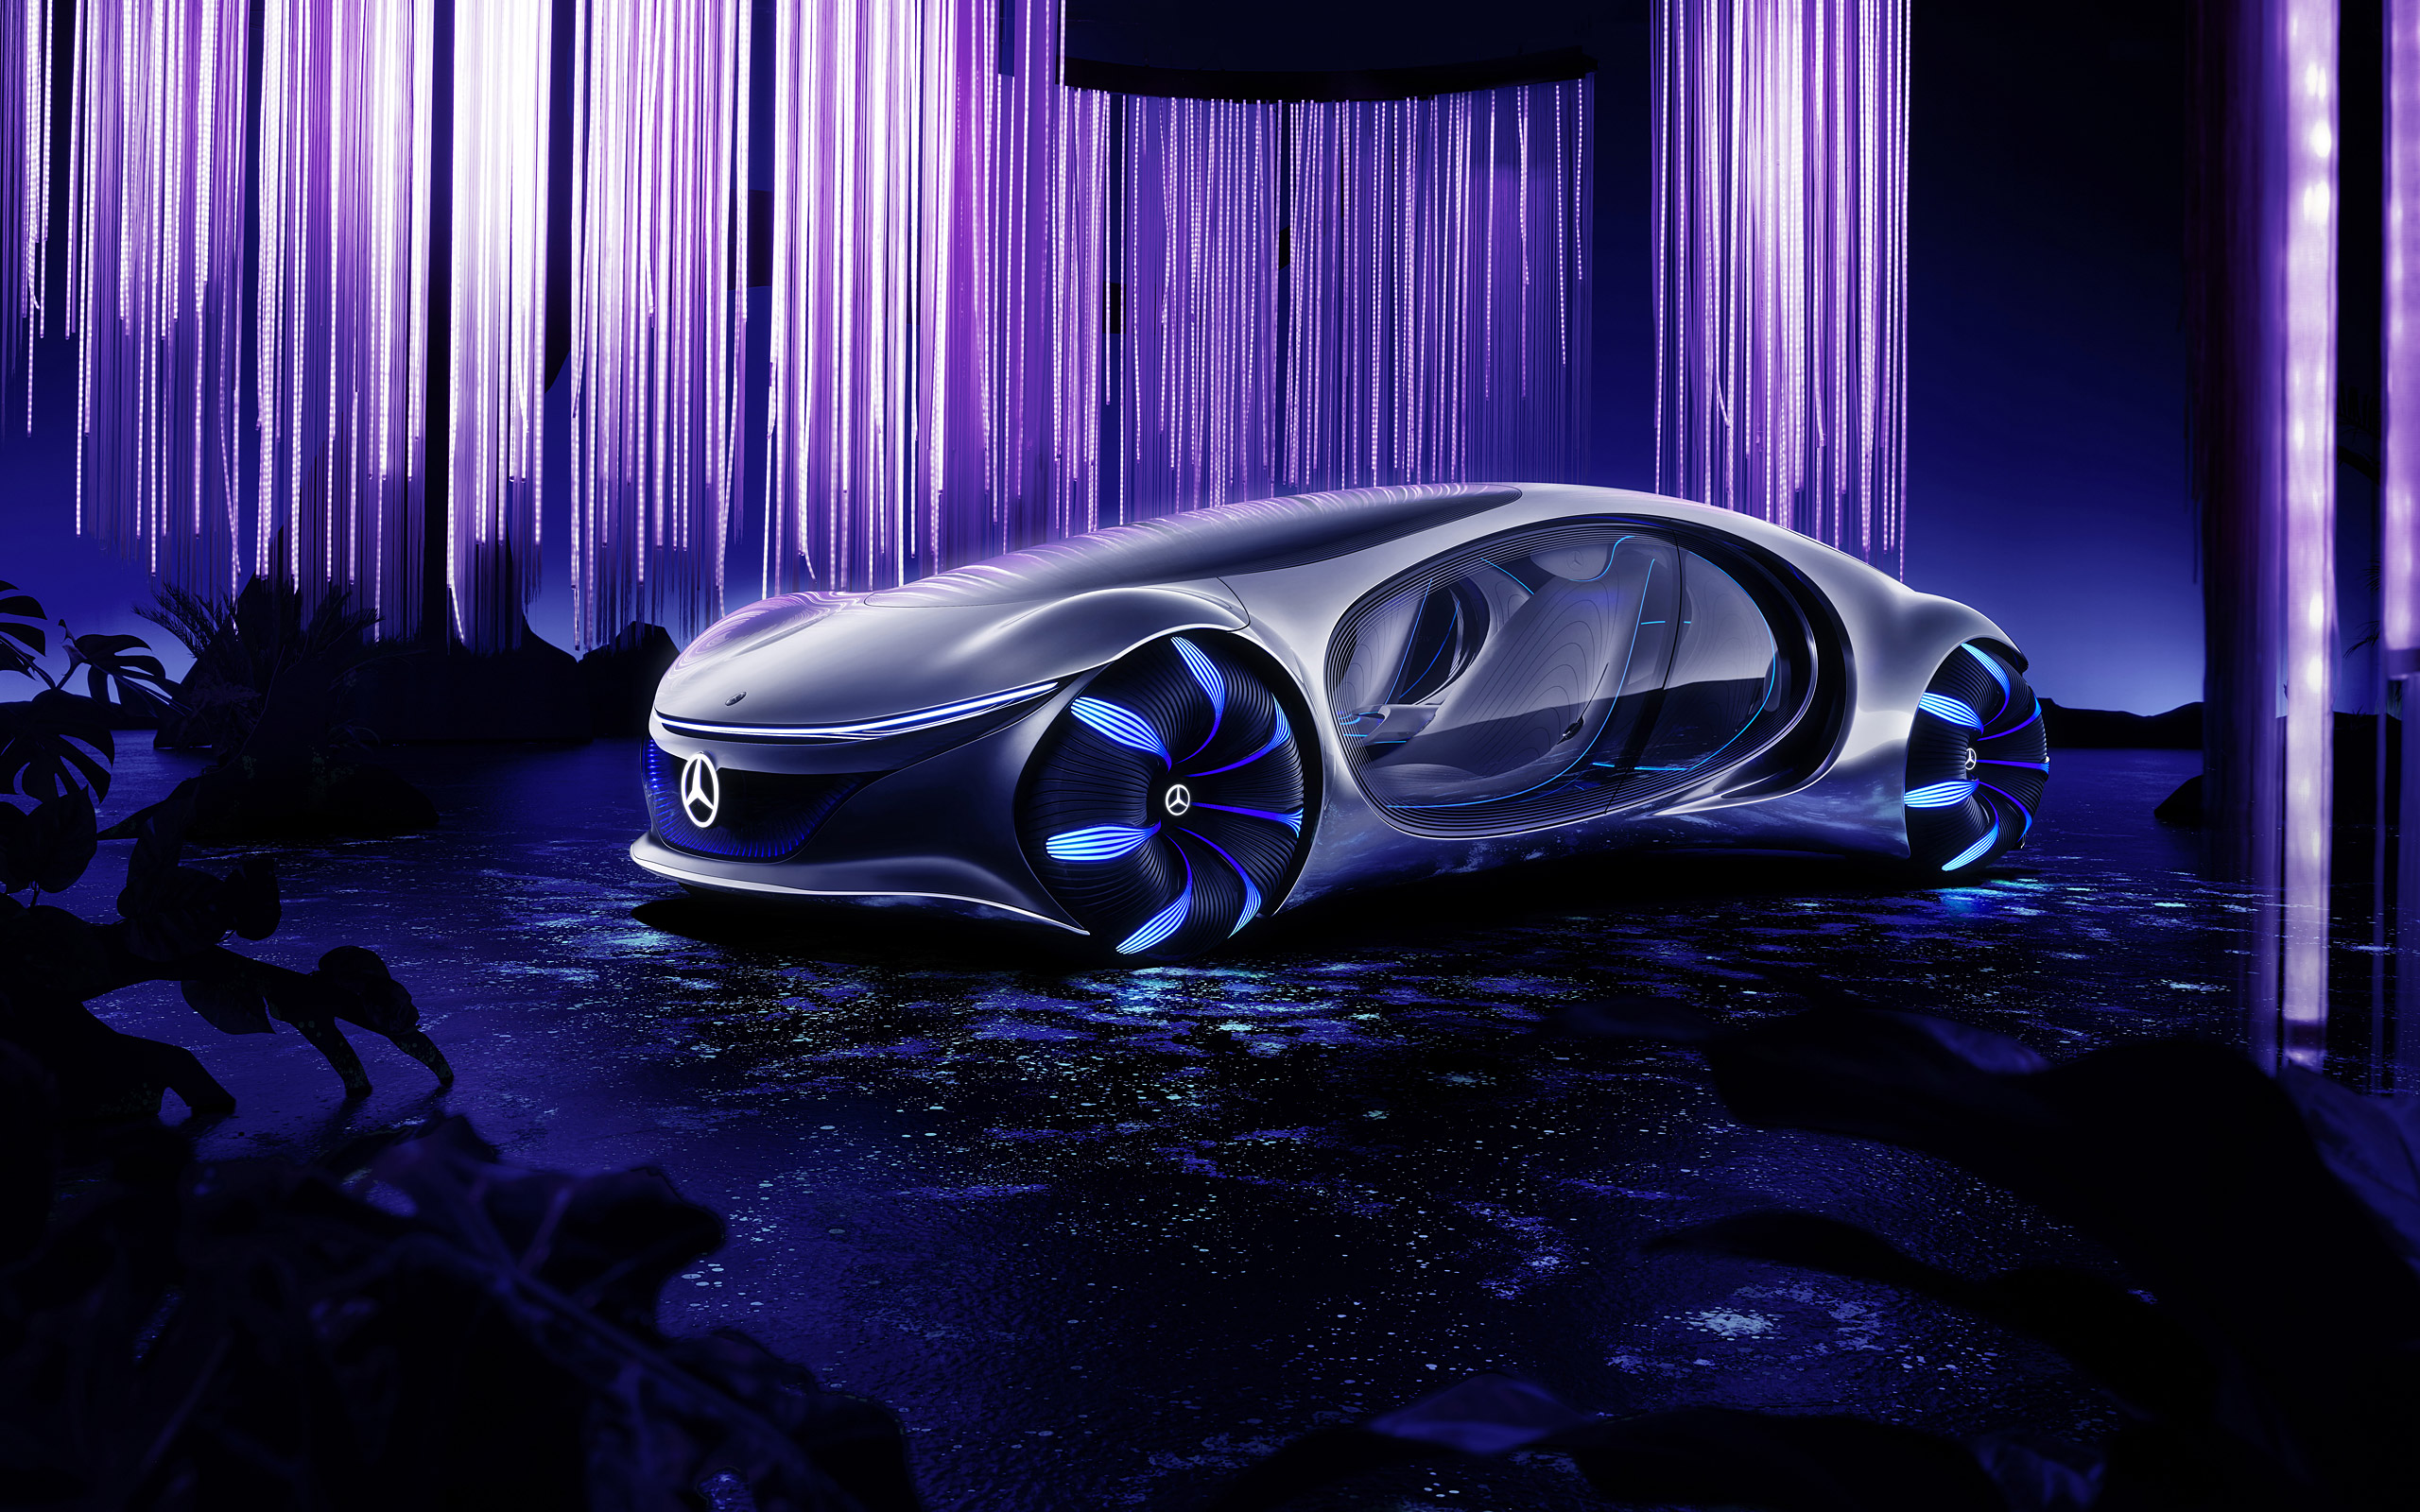  2020 Mercedes-Benz Vision AVTR Concept Wallpaper.